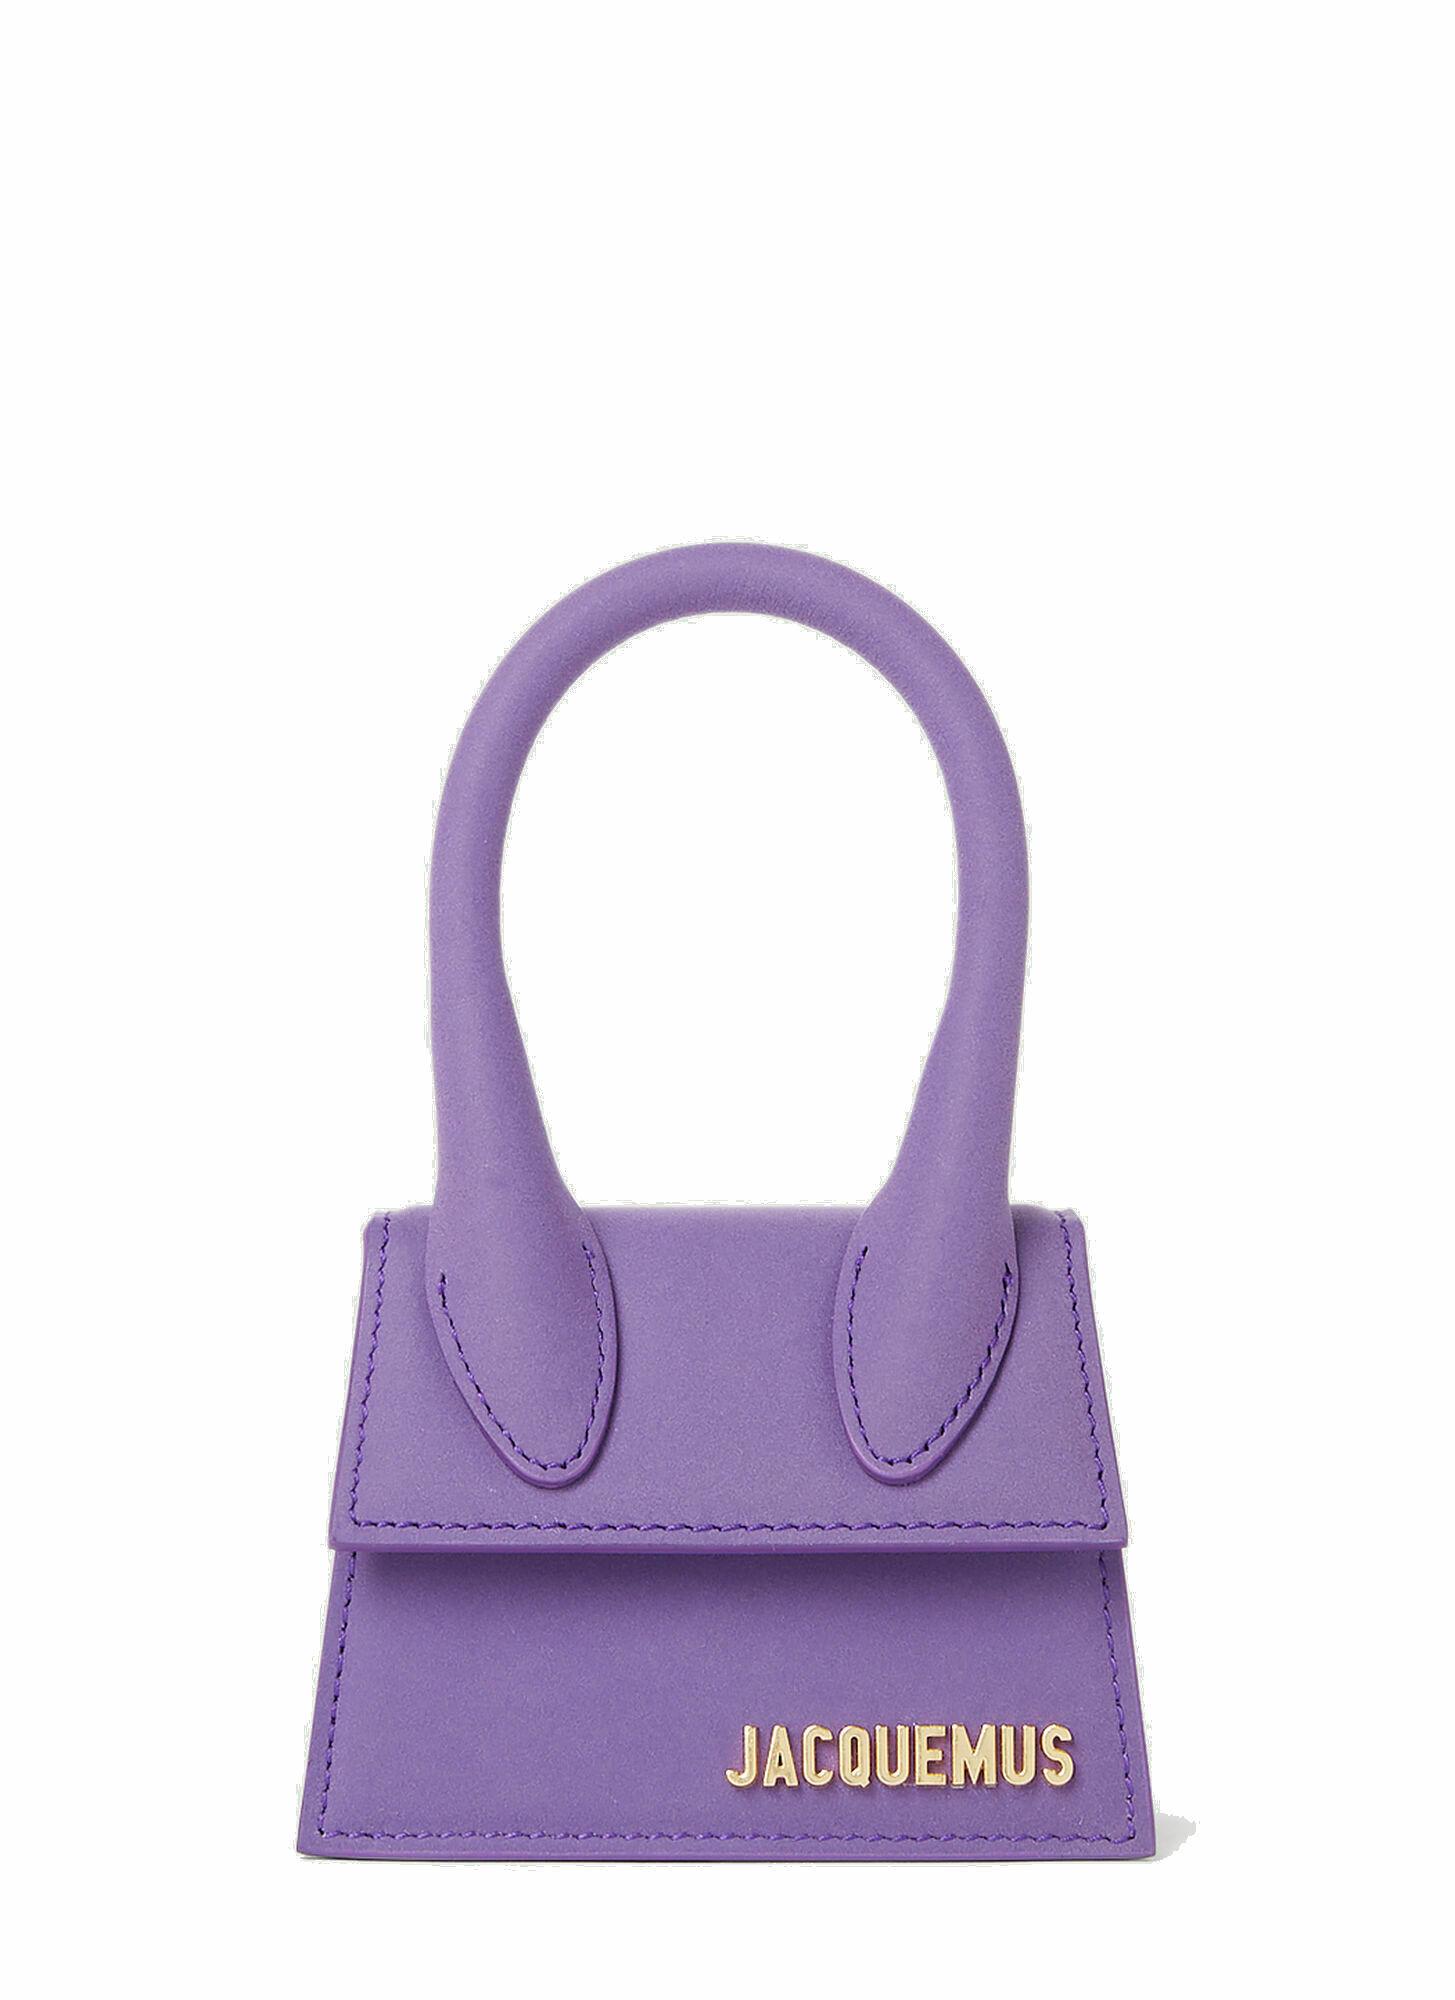 Jacquemus - Le Chiquito Handbag in Purple Jacquemus